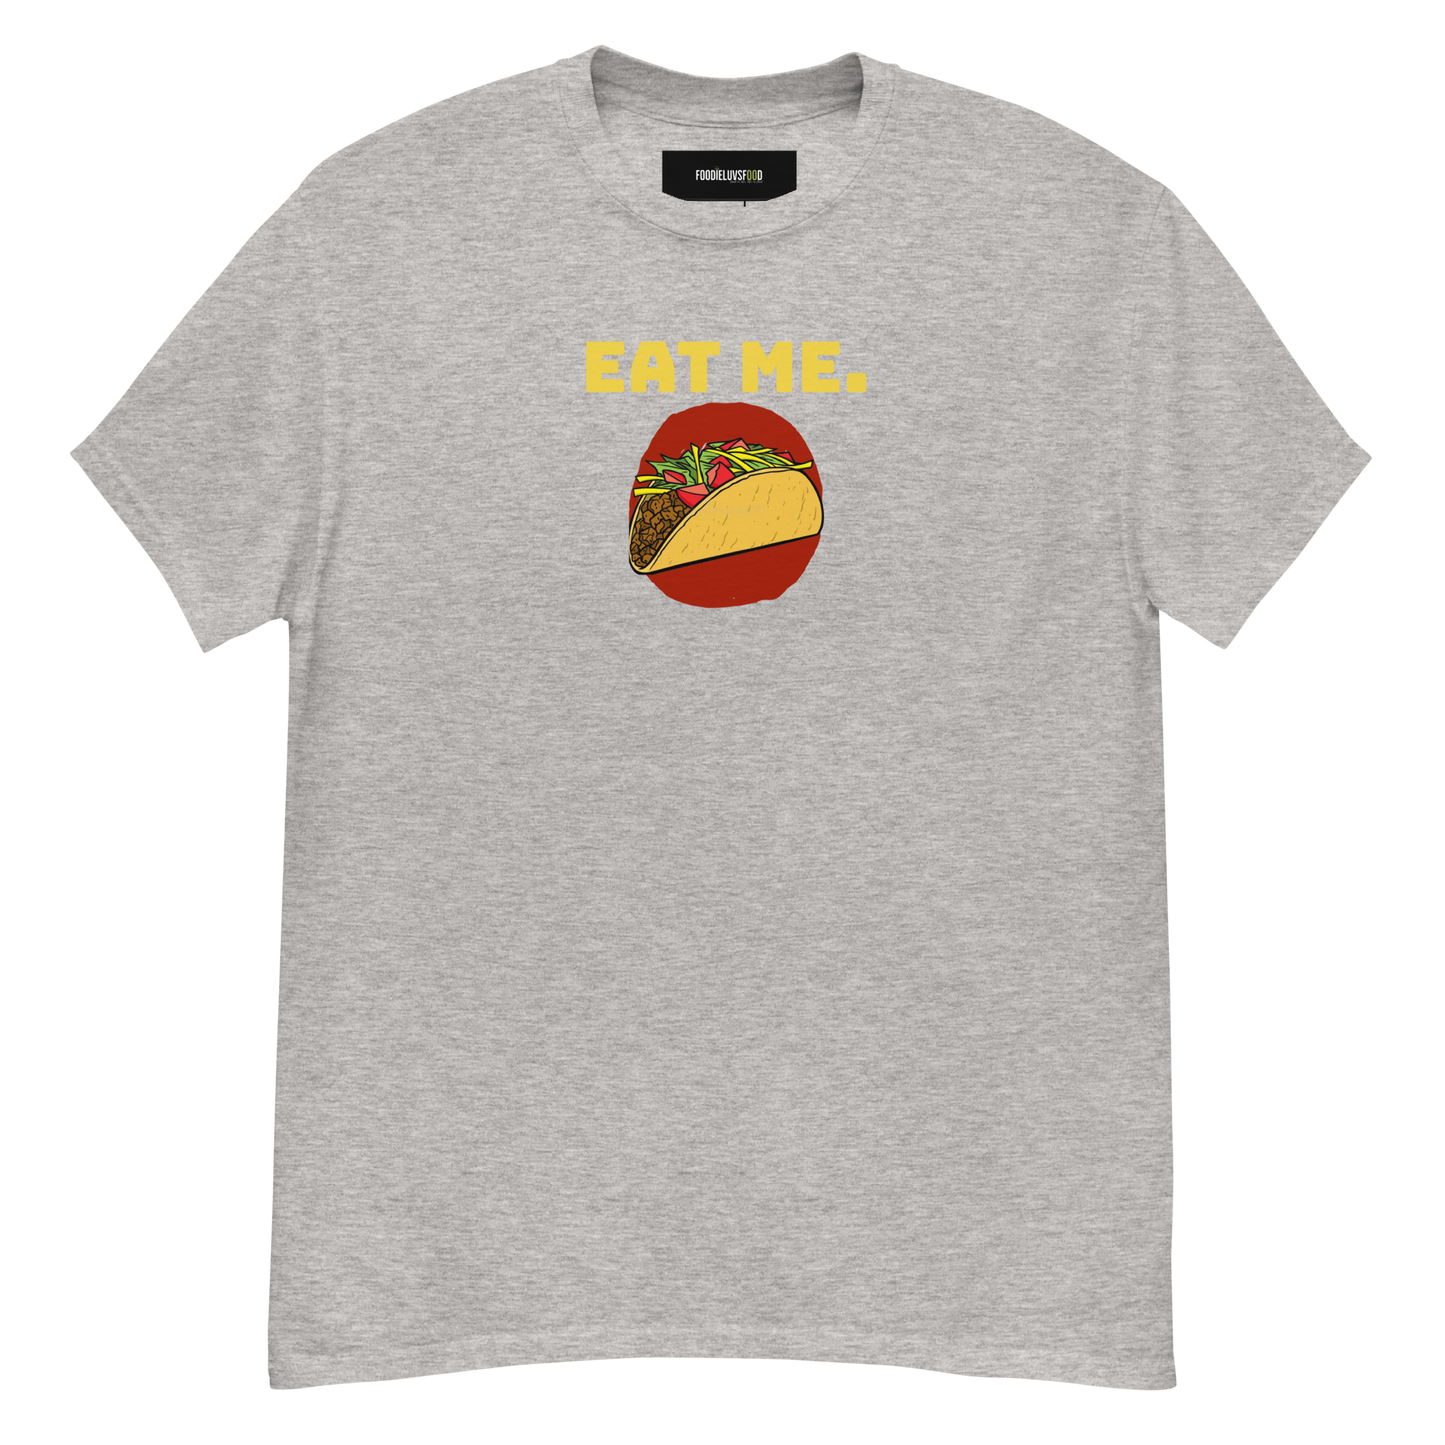 “Eat Me: Tacos” Unisex Classic T-Shirt